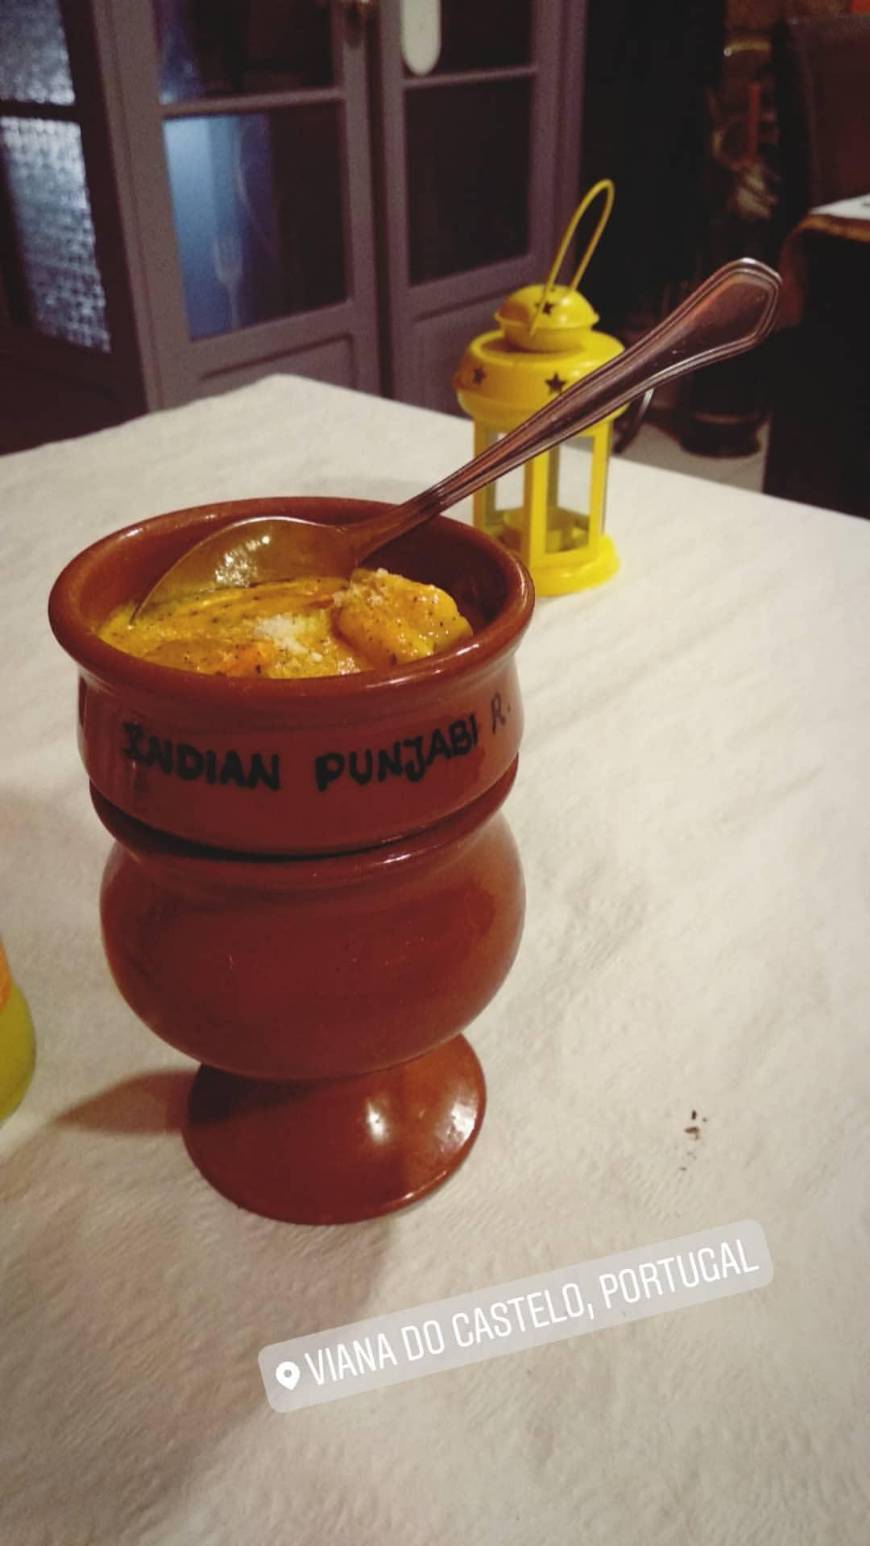 Indian Punjabi Restaurante